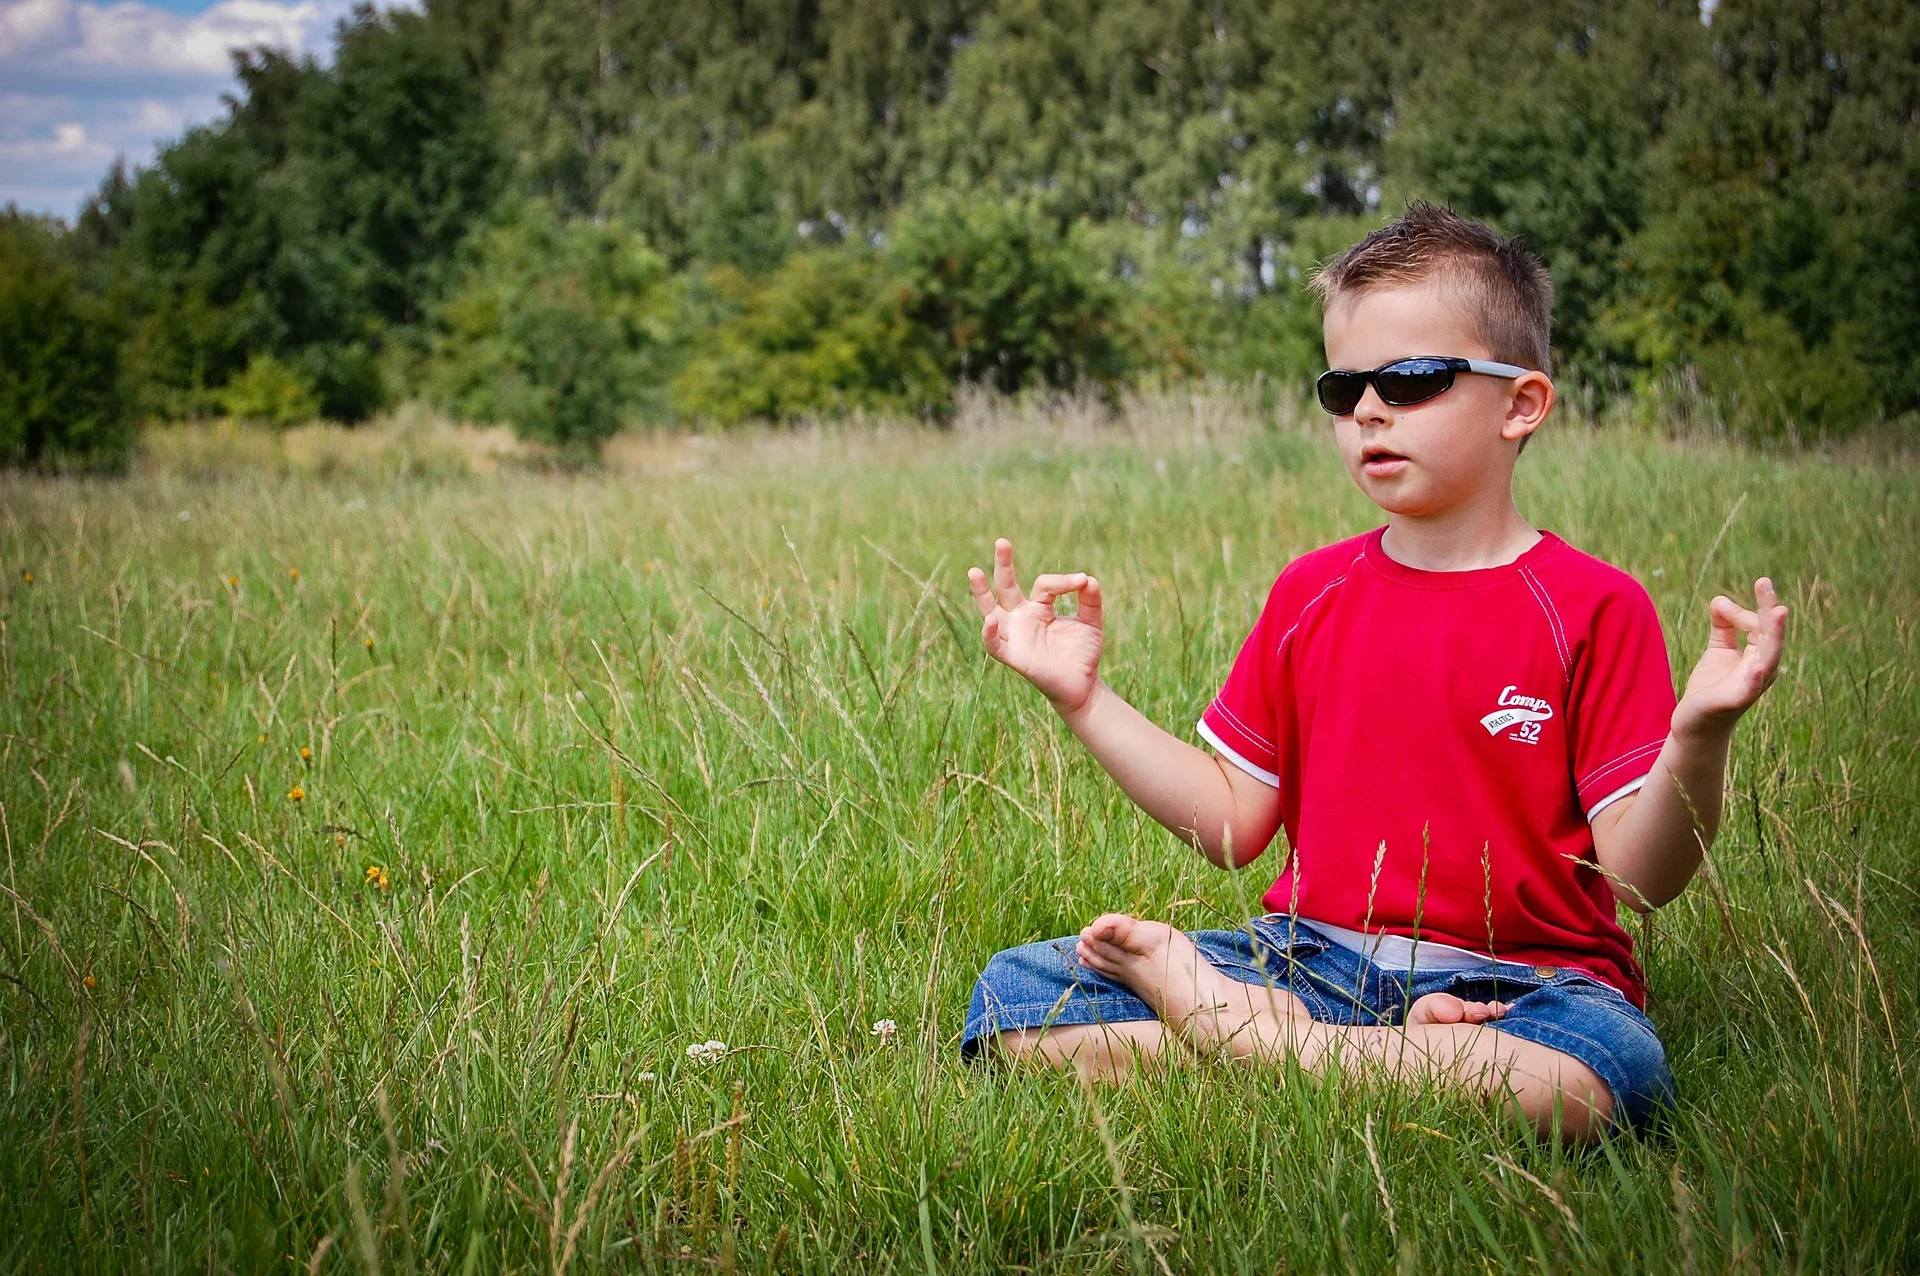  aplicar la meditación activa ventajas aula